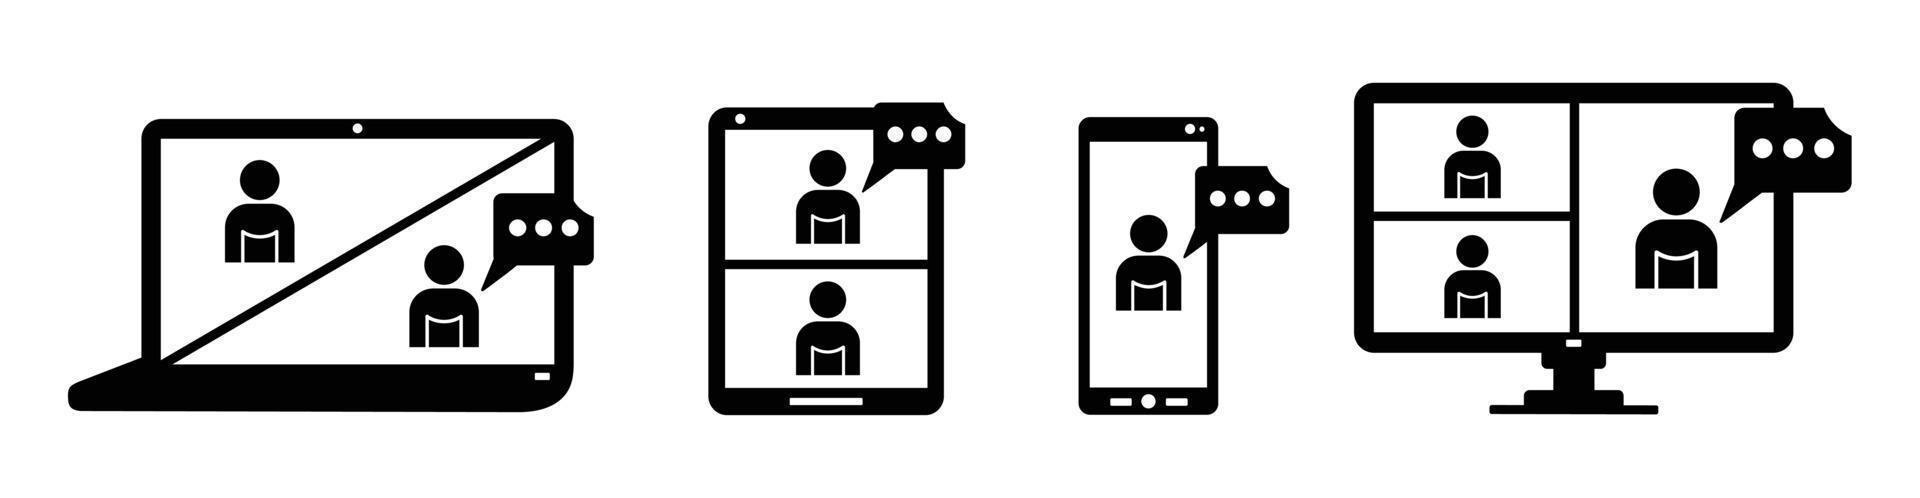 illustrazione vettoriale imposta icona di formazione online sullo schermo del laptop, persone sullo schermo del computer, smartphone, tablet, spazio di lavoro per riunioni online, conversazioni su Internet